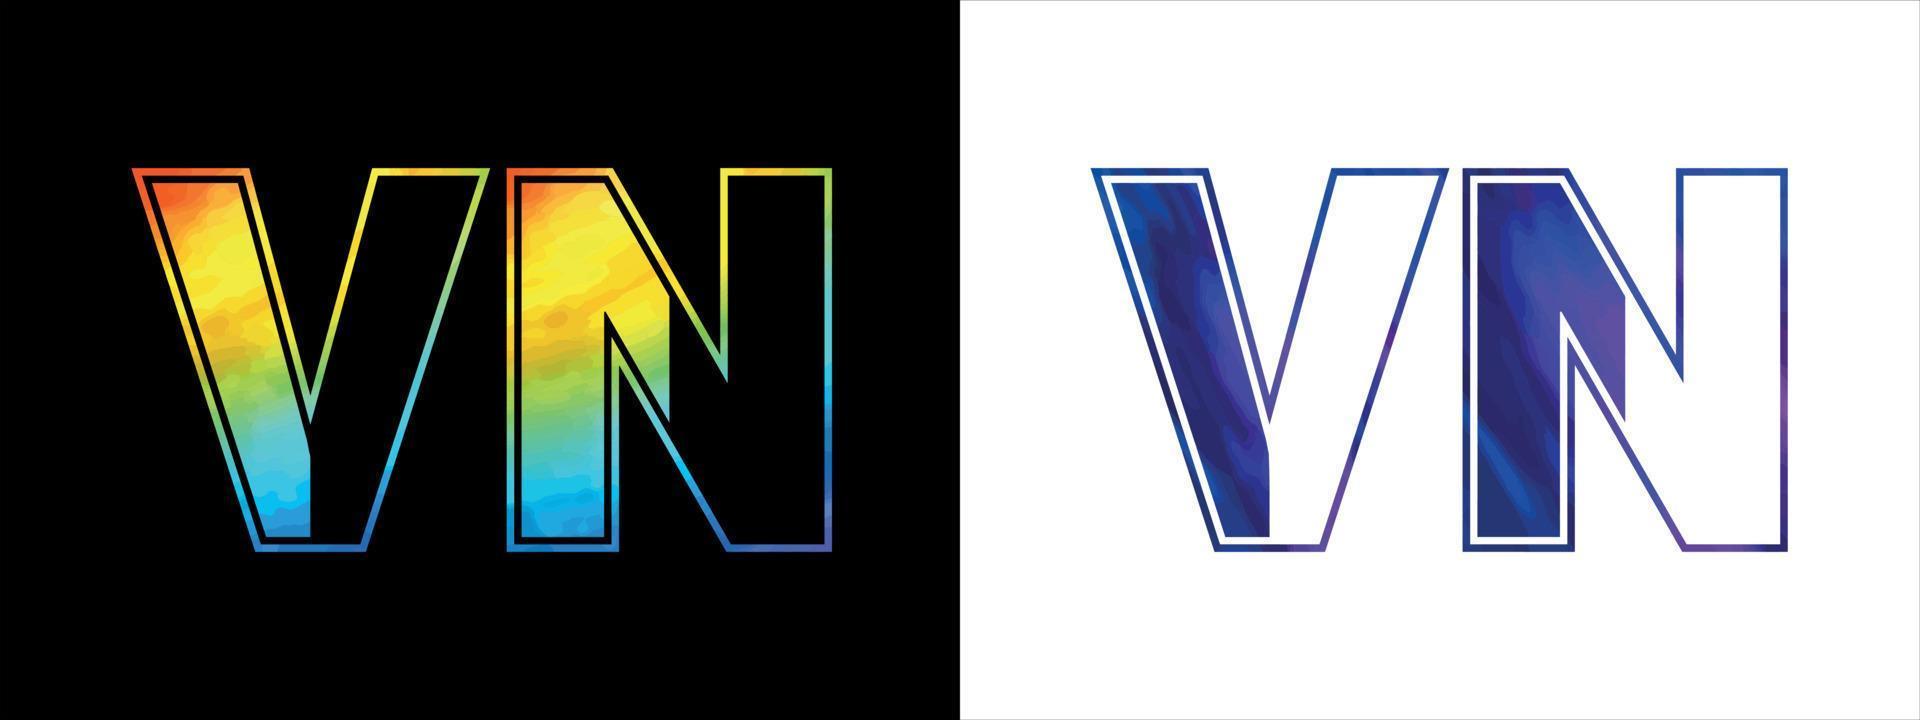 inicial letra vn logo icono vector diseño modelo. prima lujoso logotipo para corporativo negocio identidad